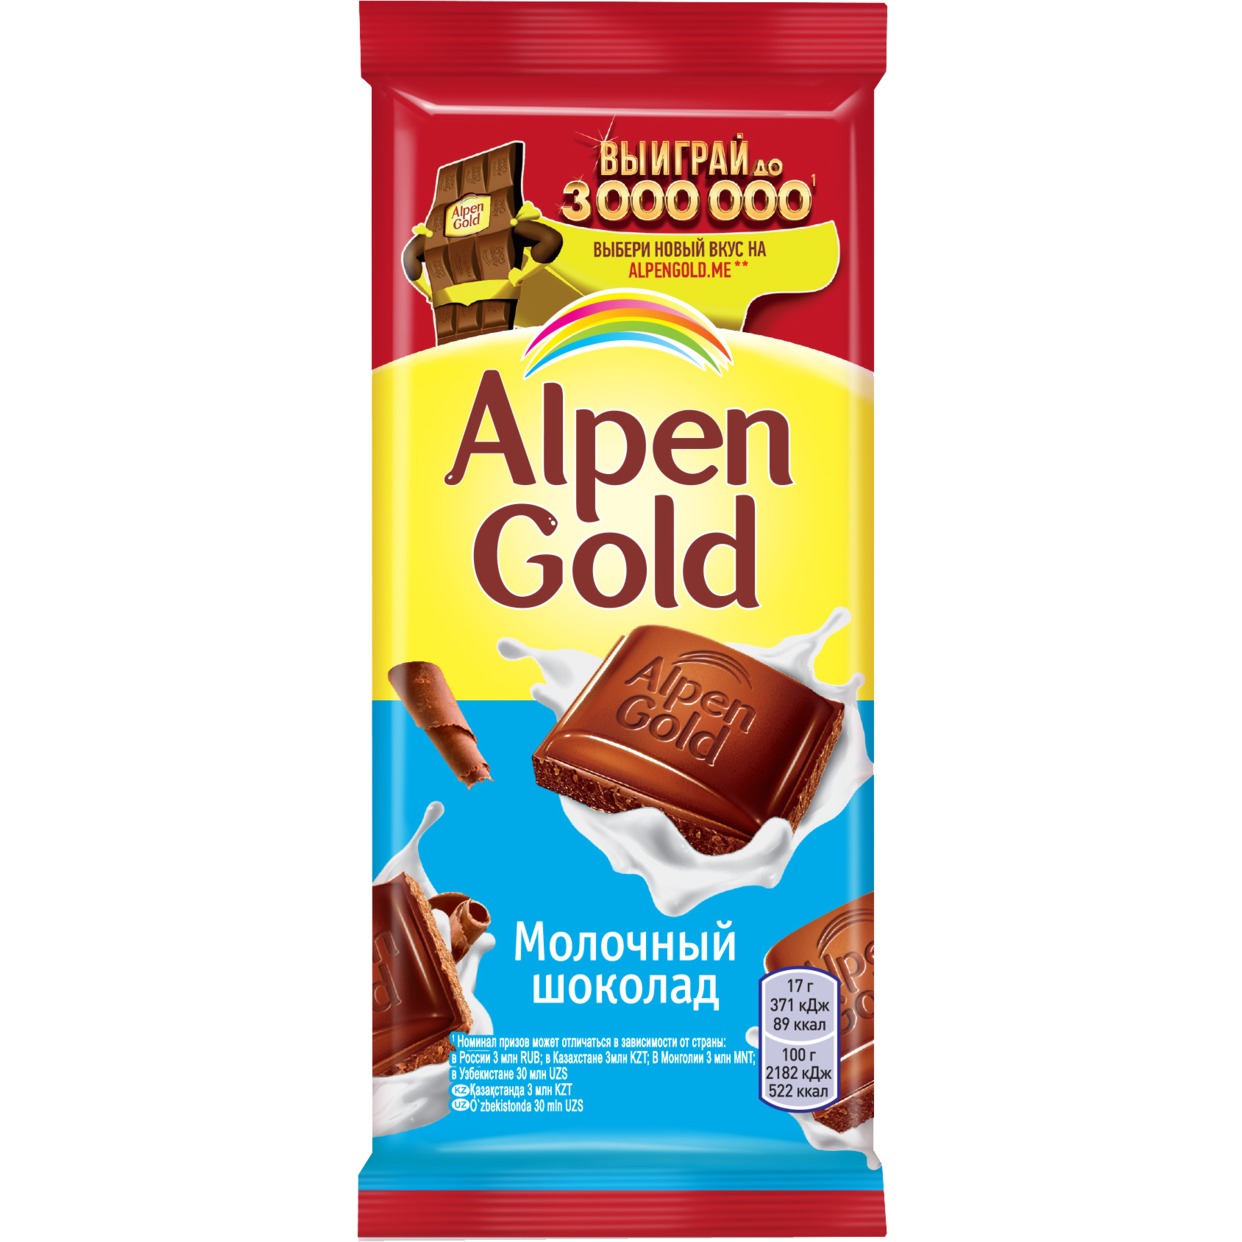 Шоколад молочный Alpen Gold Альпен Гольд, 85г по акции в Пятерочке